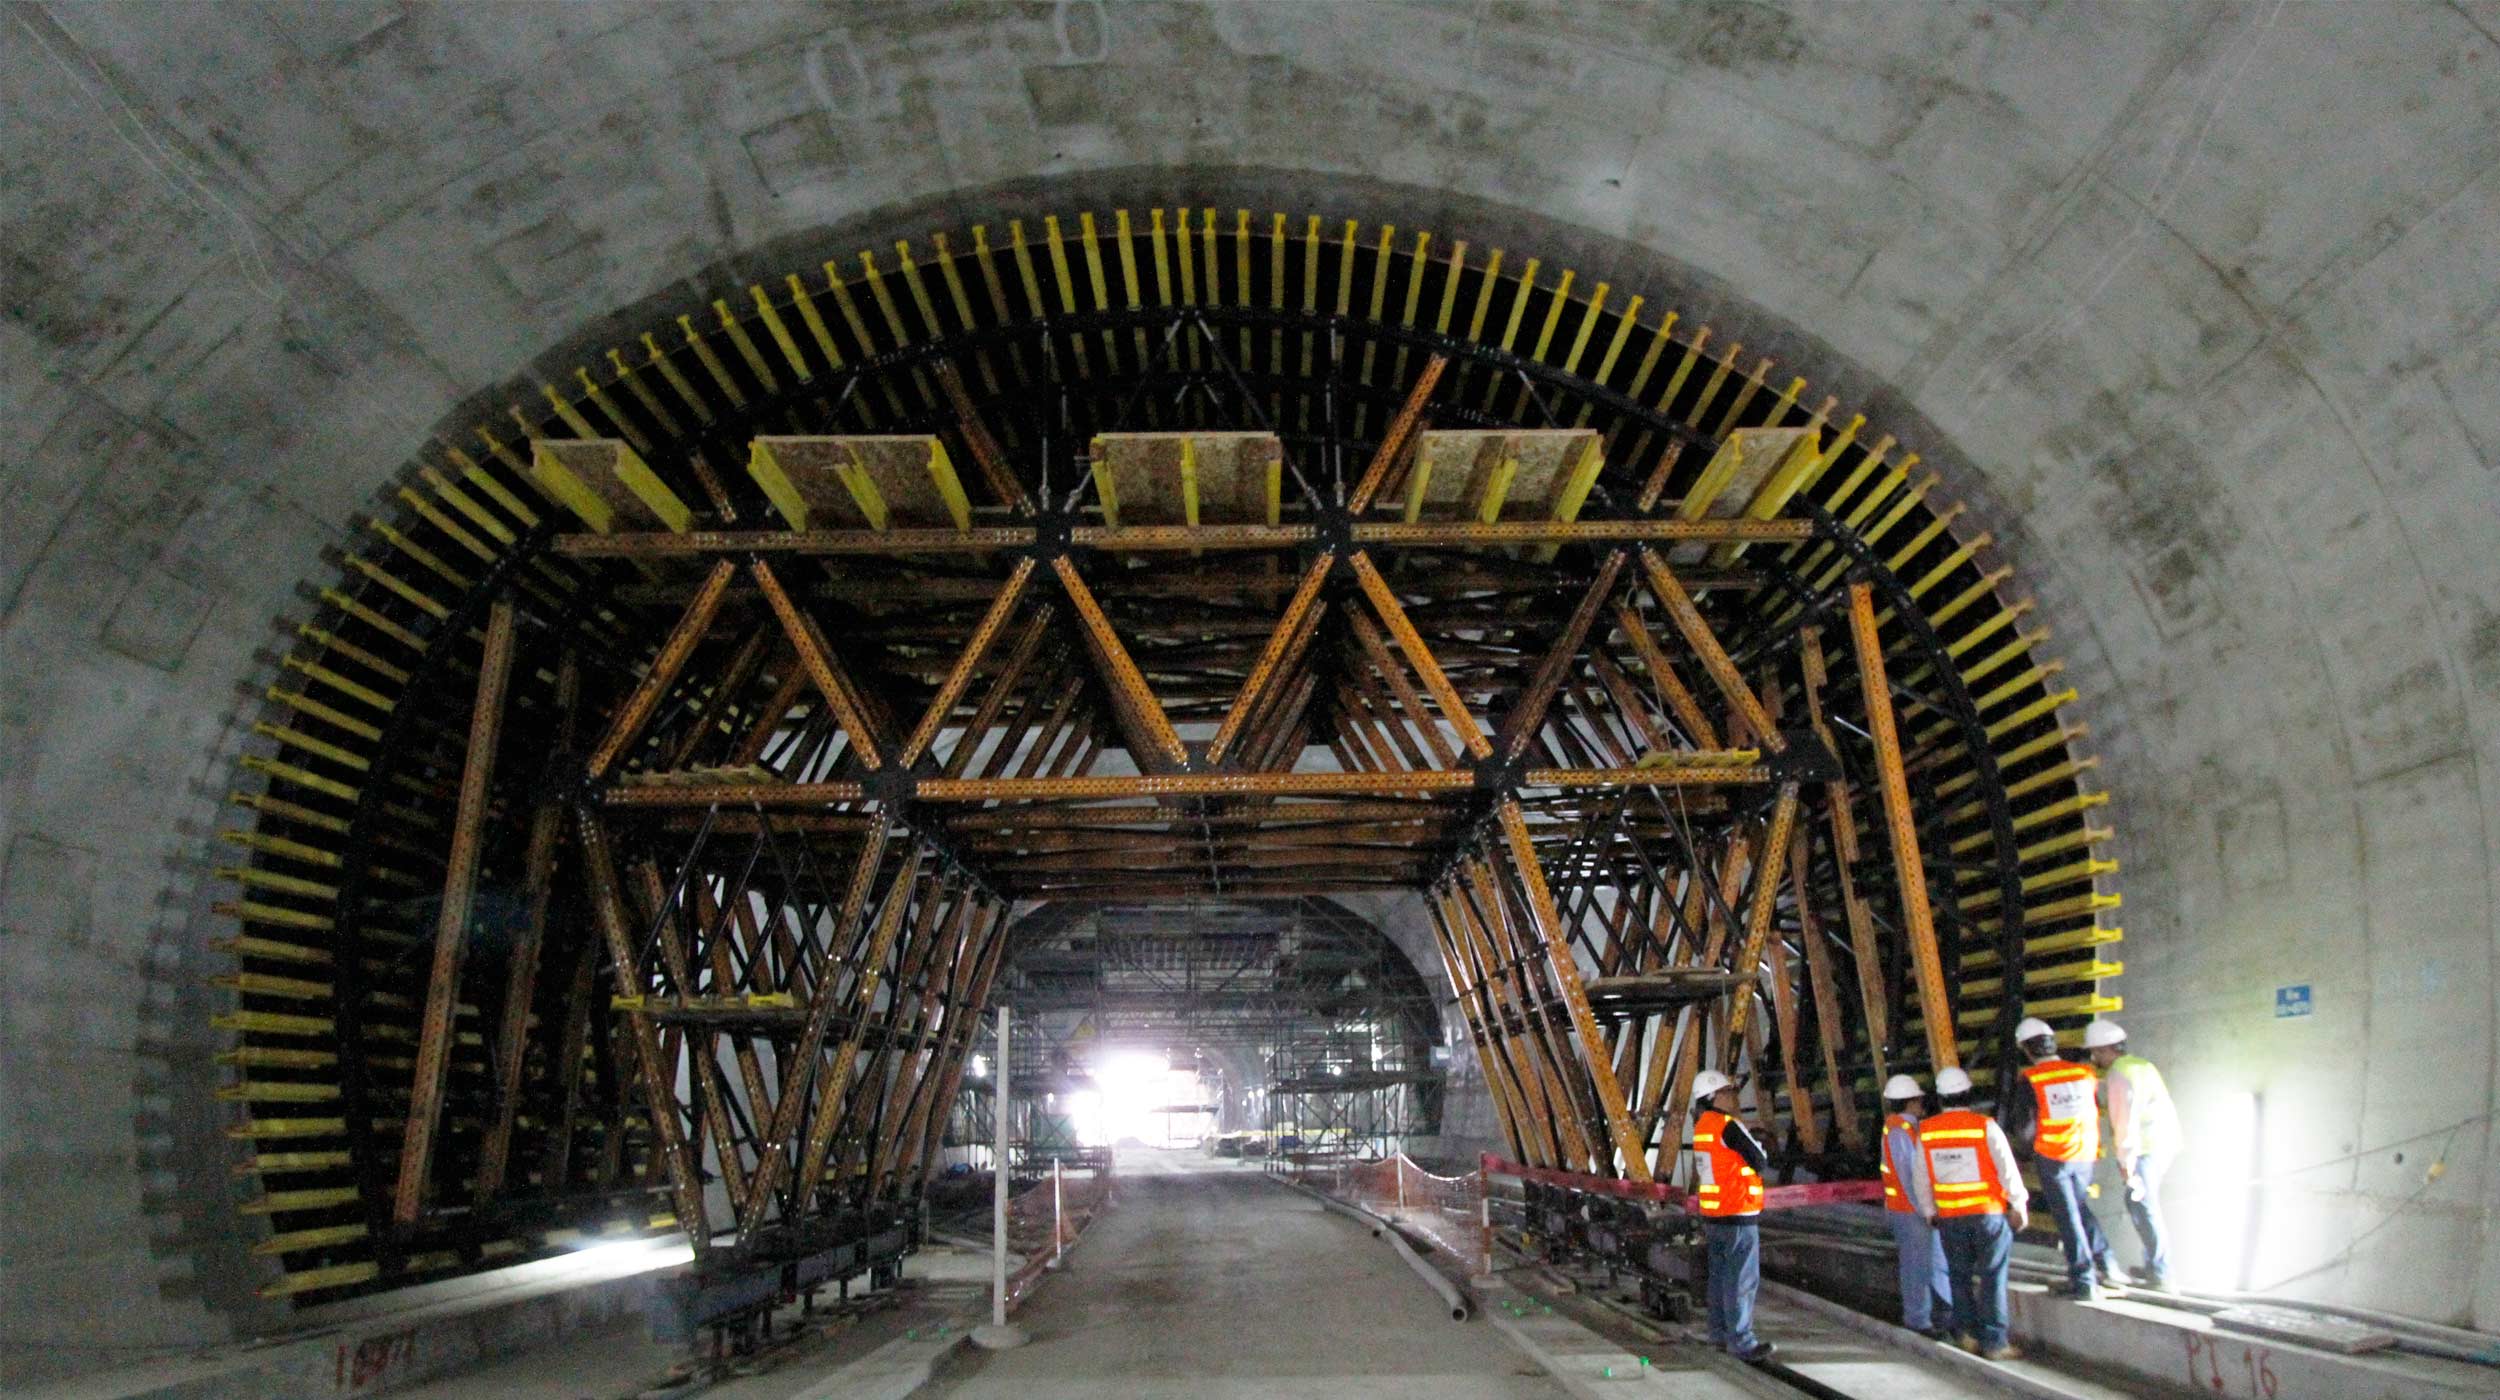 Vía subterránea, que cruza el cerro Santa Rosa uniendo los distritos del Rímac con San Juan de Lurigancho, agilizando el trafico de este a oeste (Túnel Santa Rosa) y viceversa (Túnel San Martin). Cada túnel posee dos carriles y una longitud promedio de 250 m , un ancho de 7.20 m, y una altura libra de 8.00 m.